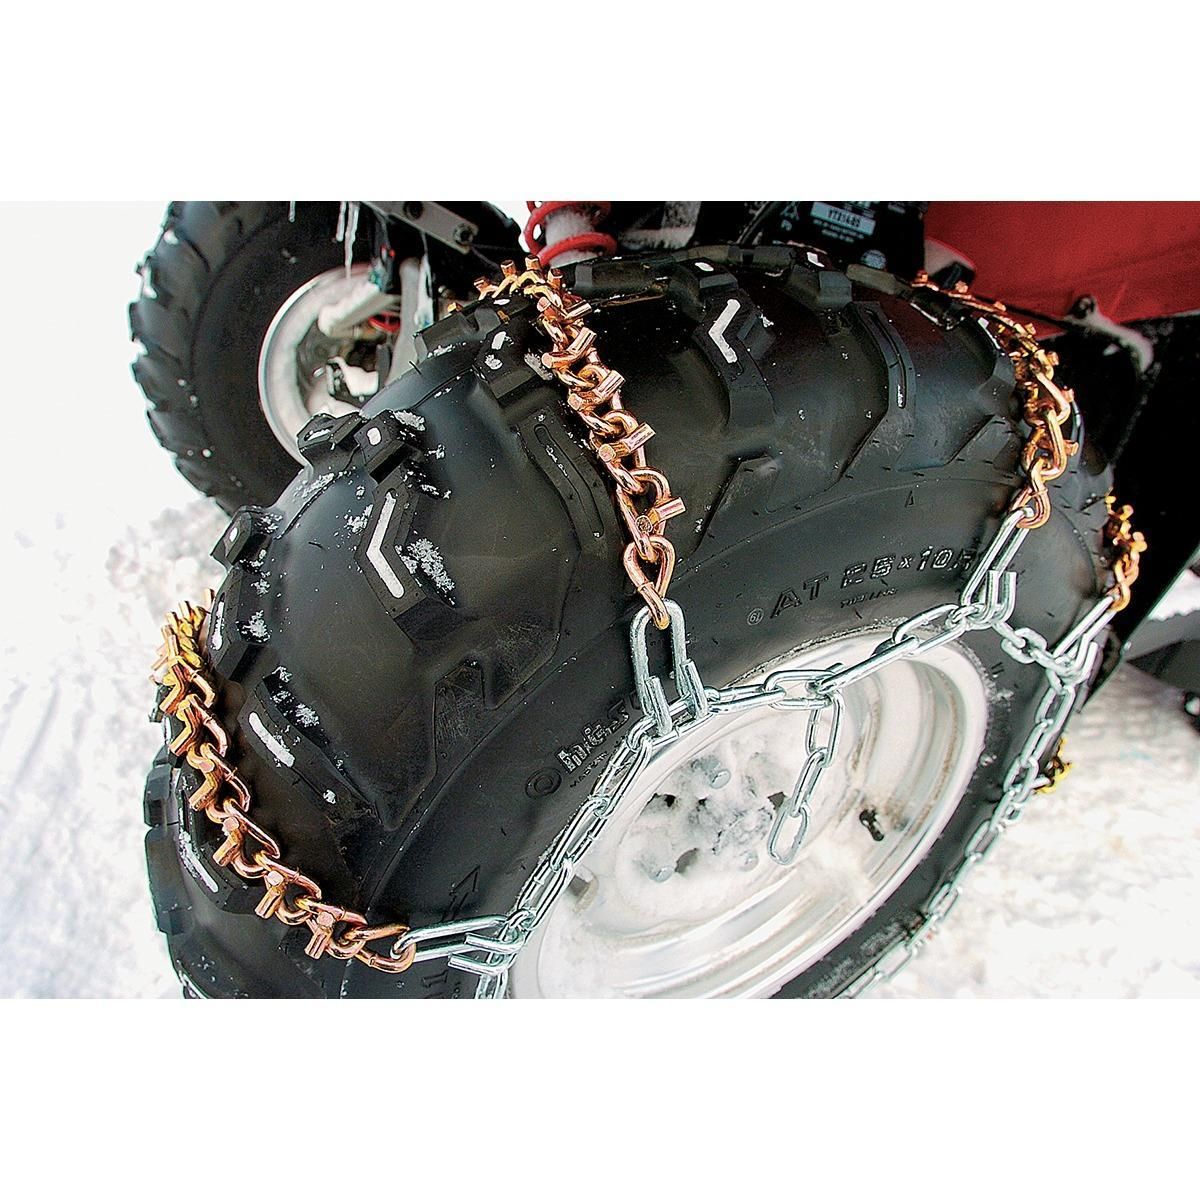 3HOJ-MOOSE-UTILI-M9160009 9-VBAR Tire Chains